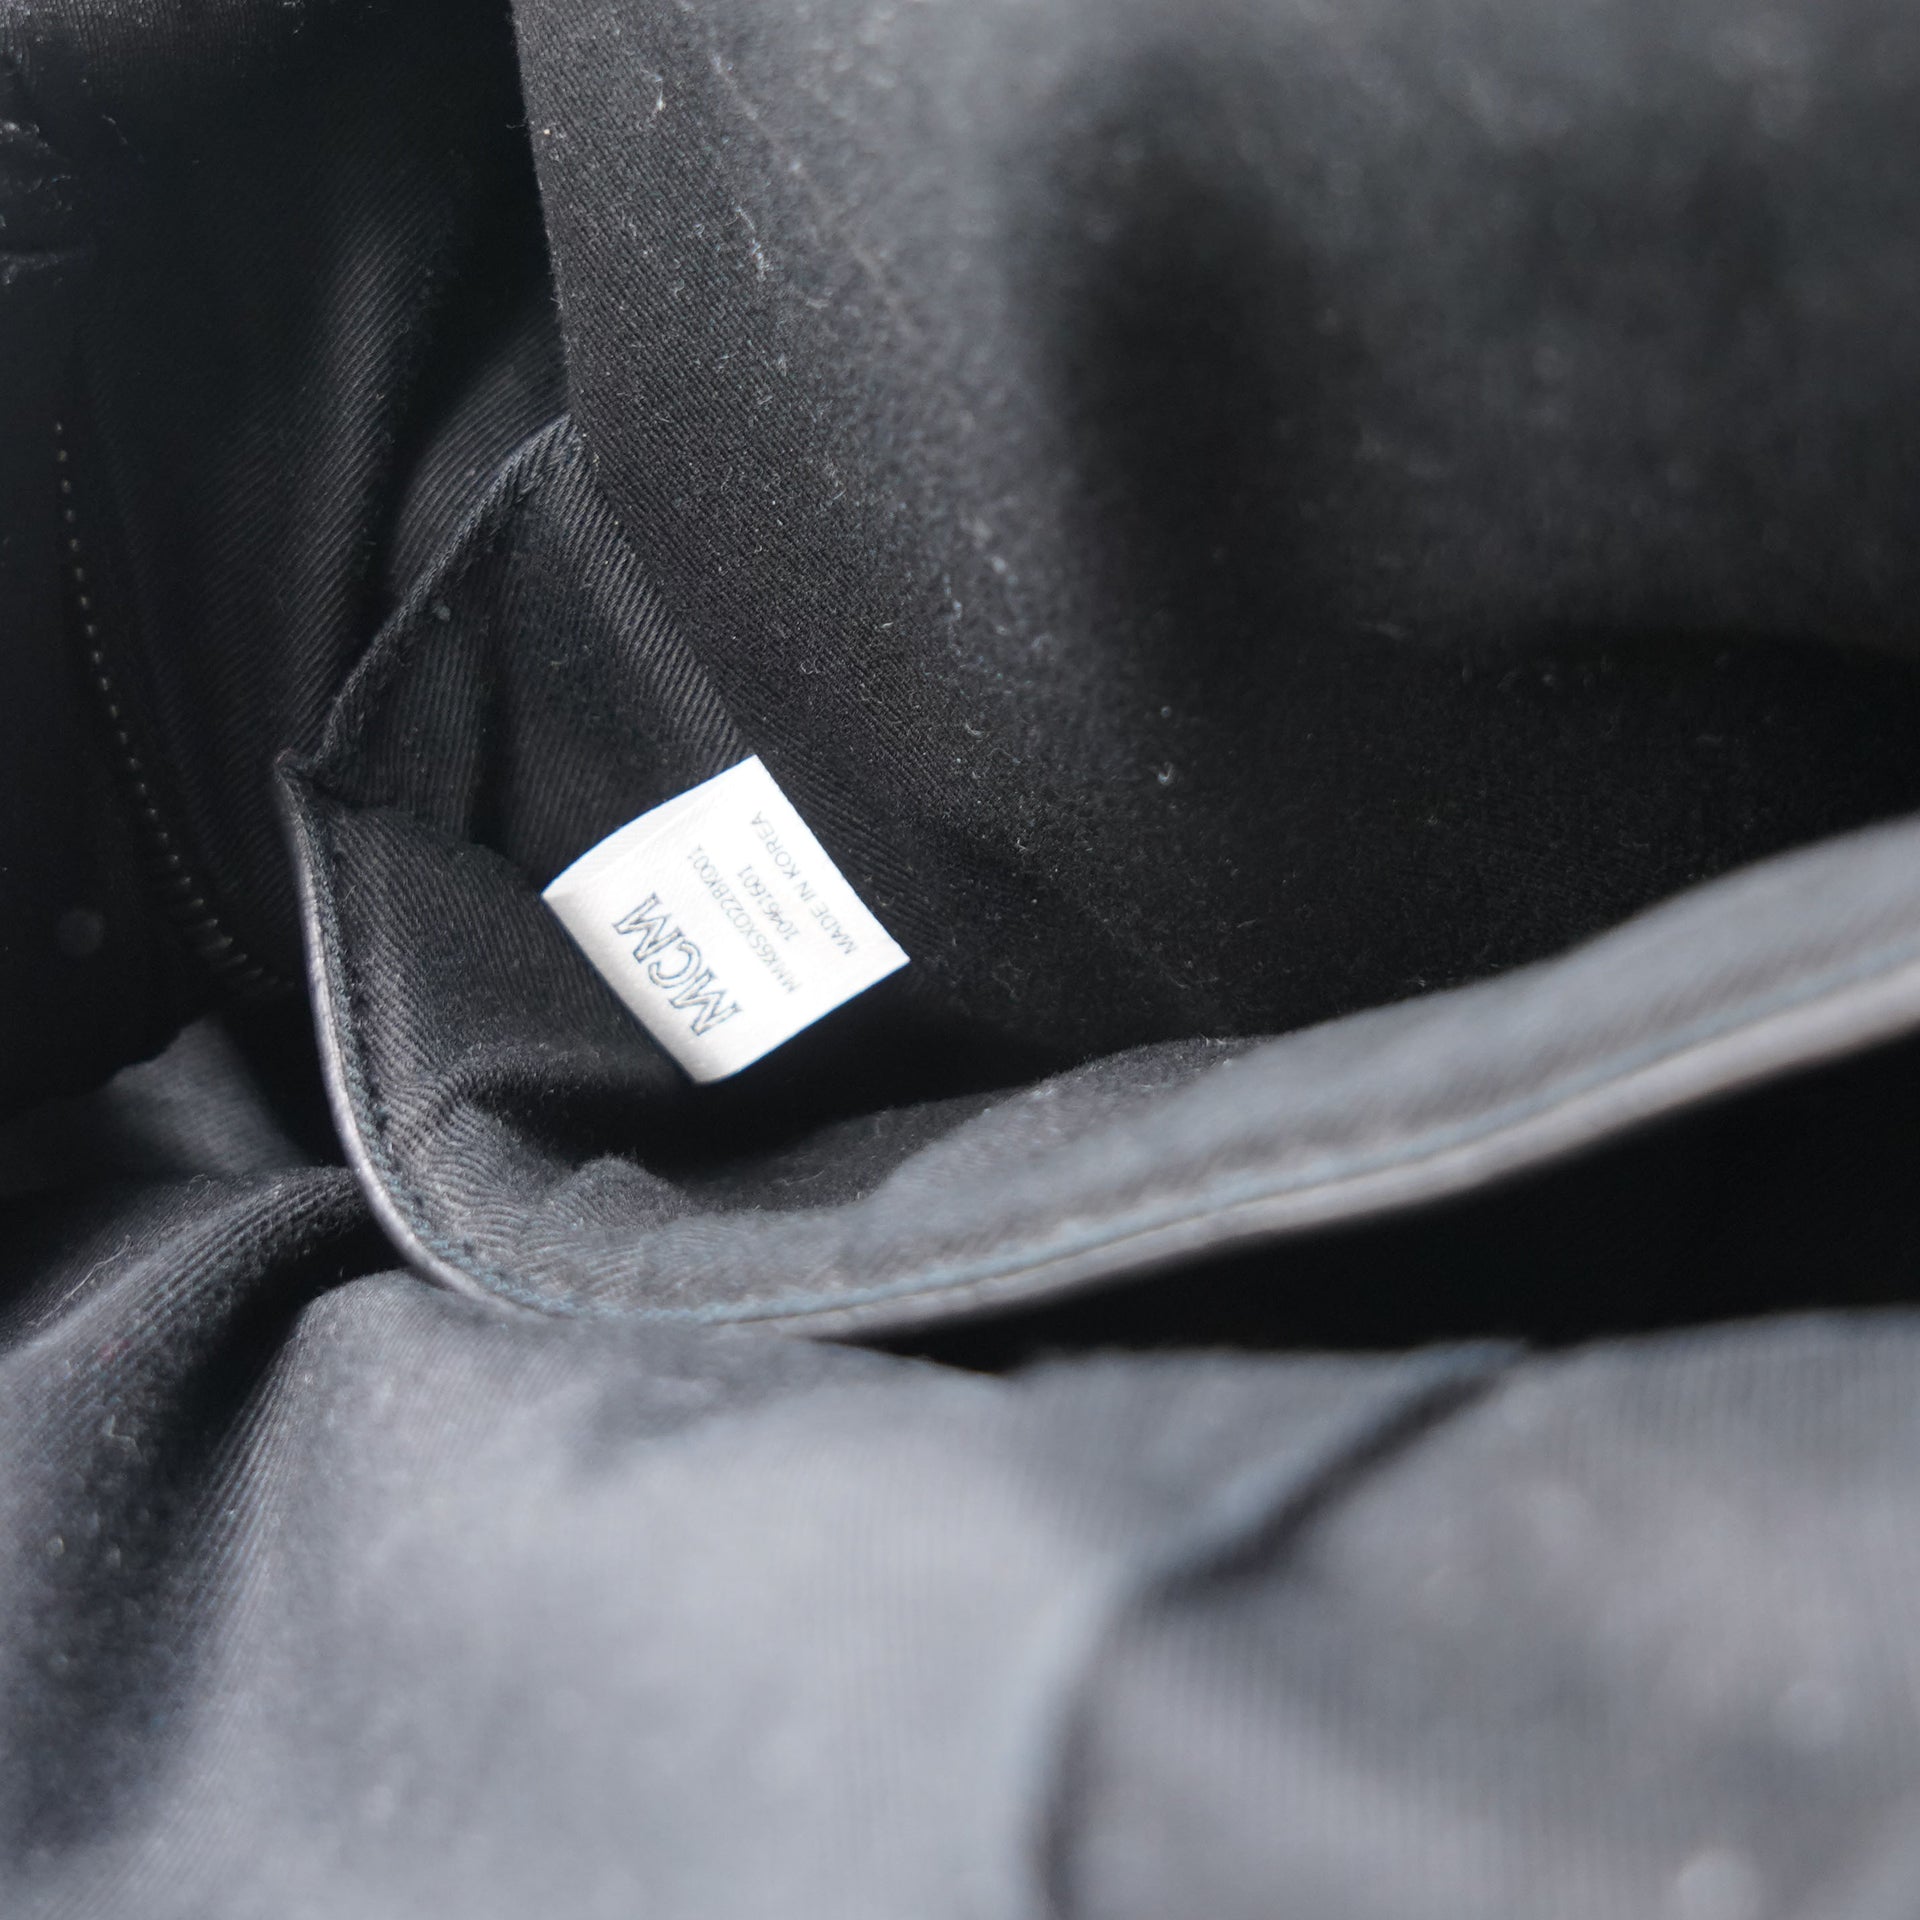 Monogram Leather Stud Medium Stark Backpack Black